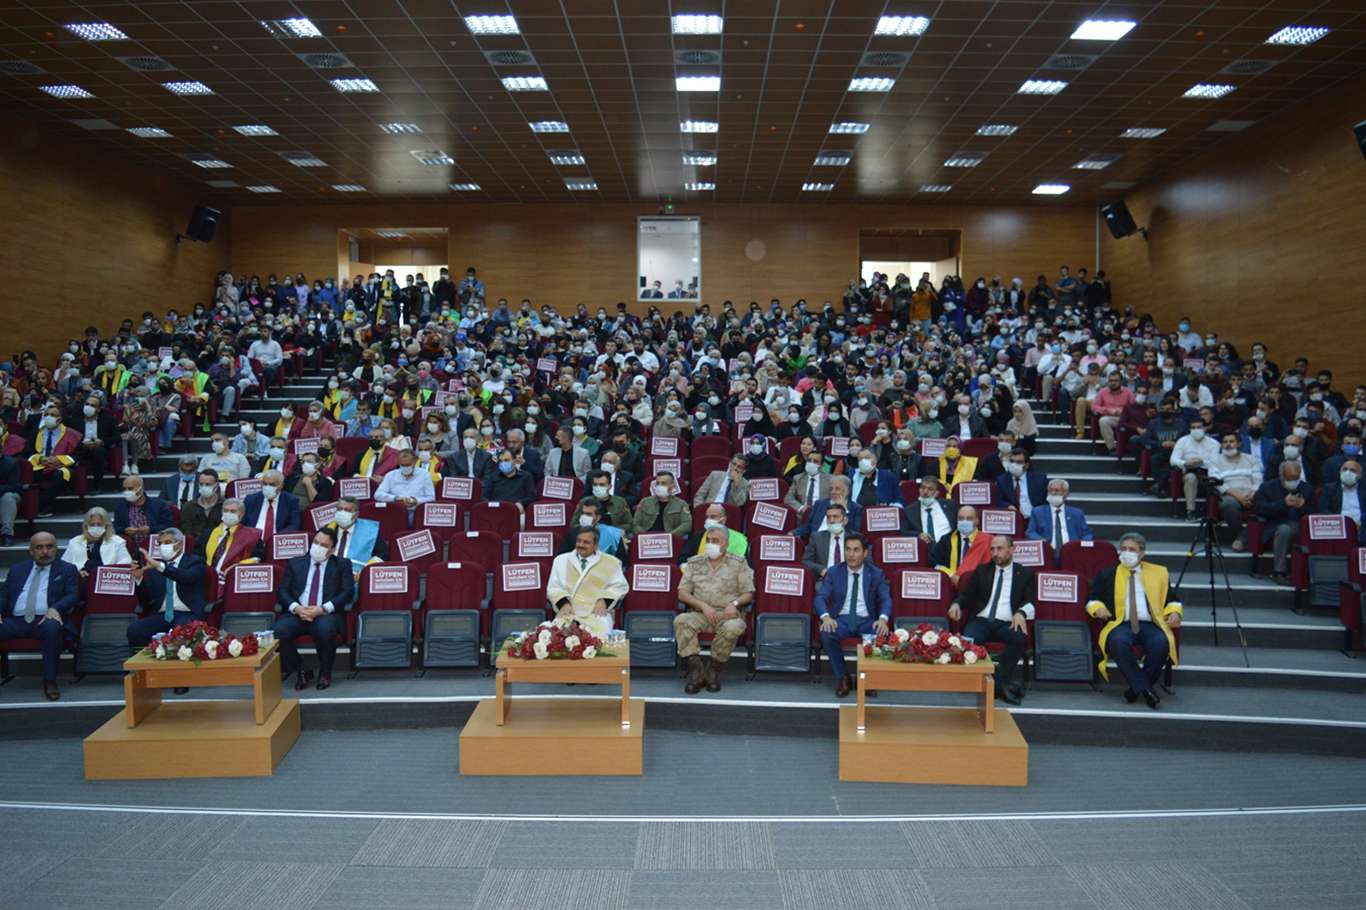 Siirt Üniversitesi’nin 2021-2022 Akademik Yılı açılış töreni gerçekleştirildi